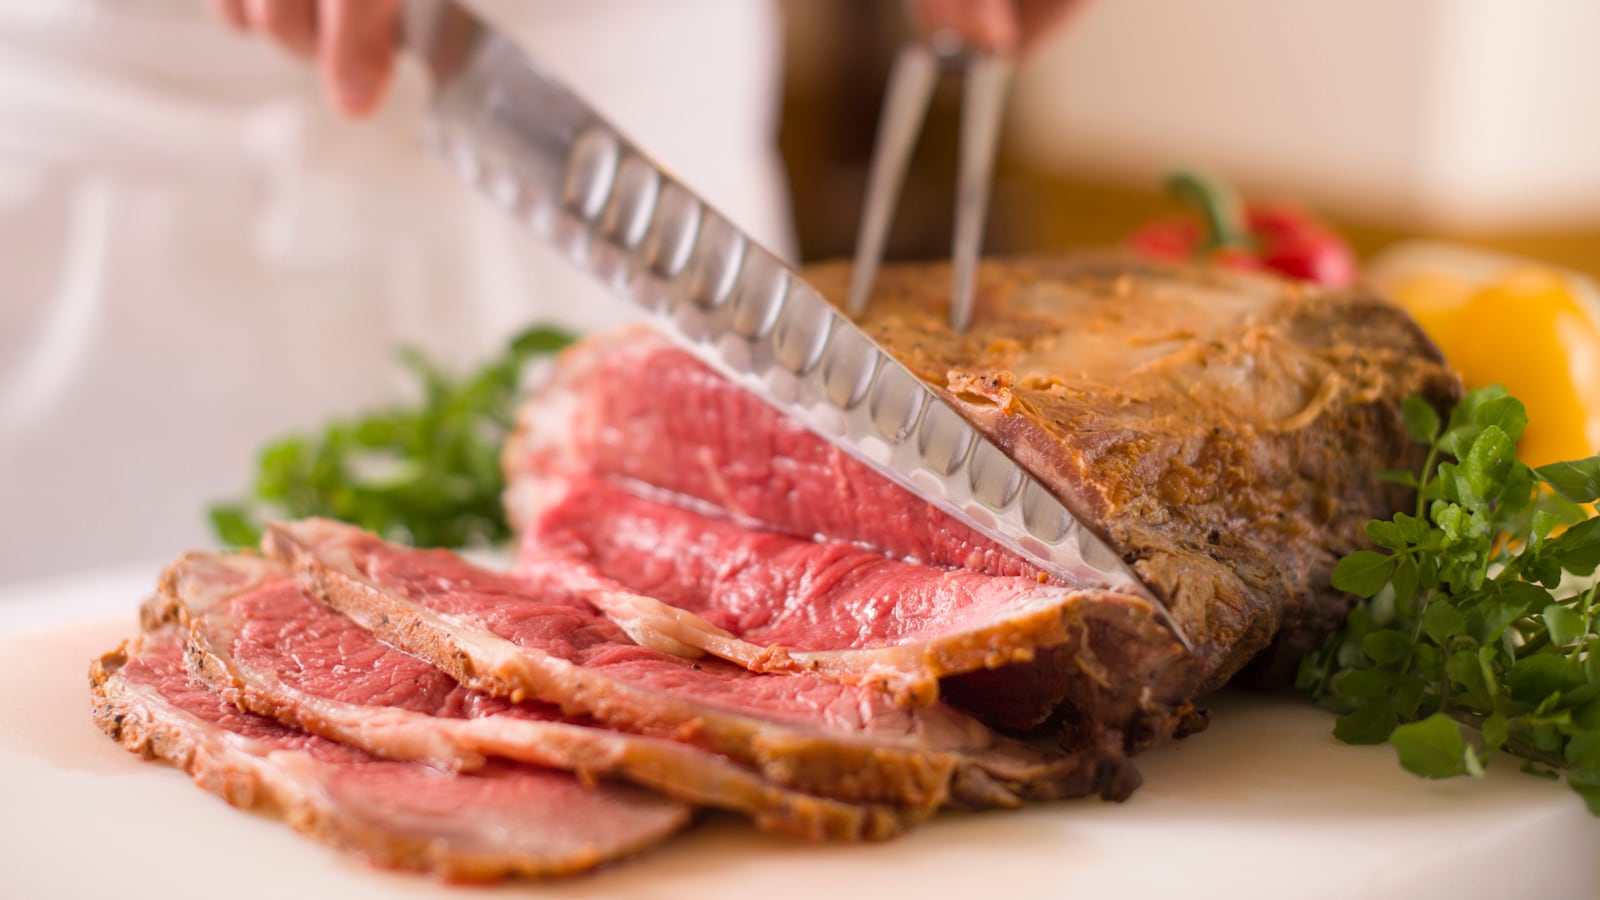 自助晚餐“特制烤牛肉”供应新鲜。把它放在米饭上用作烤牛肉碗♪